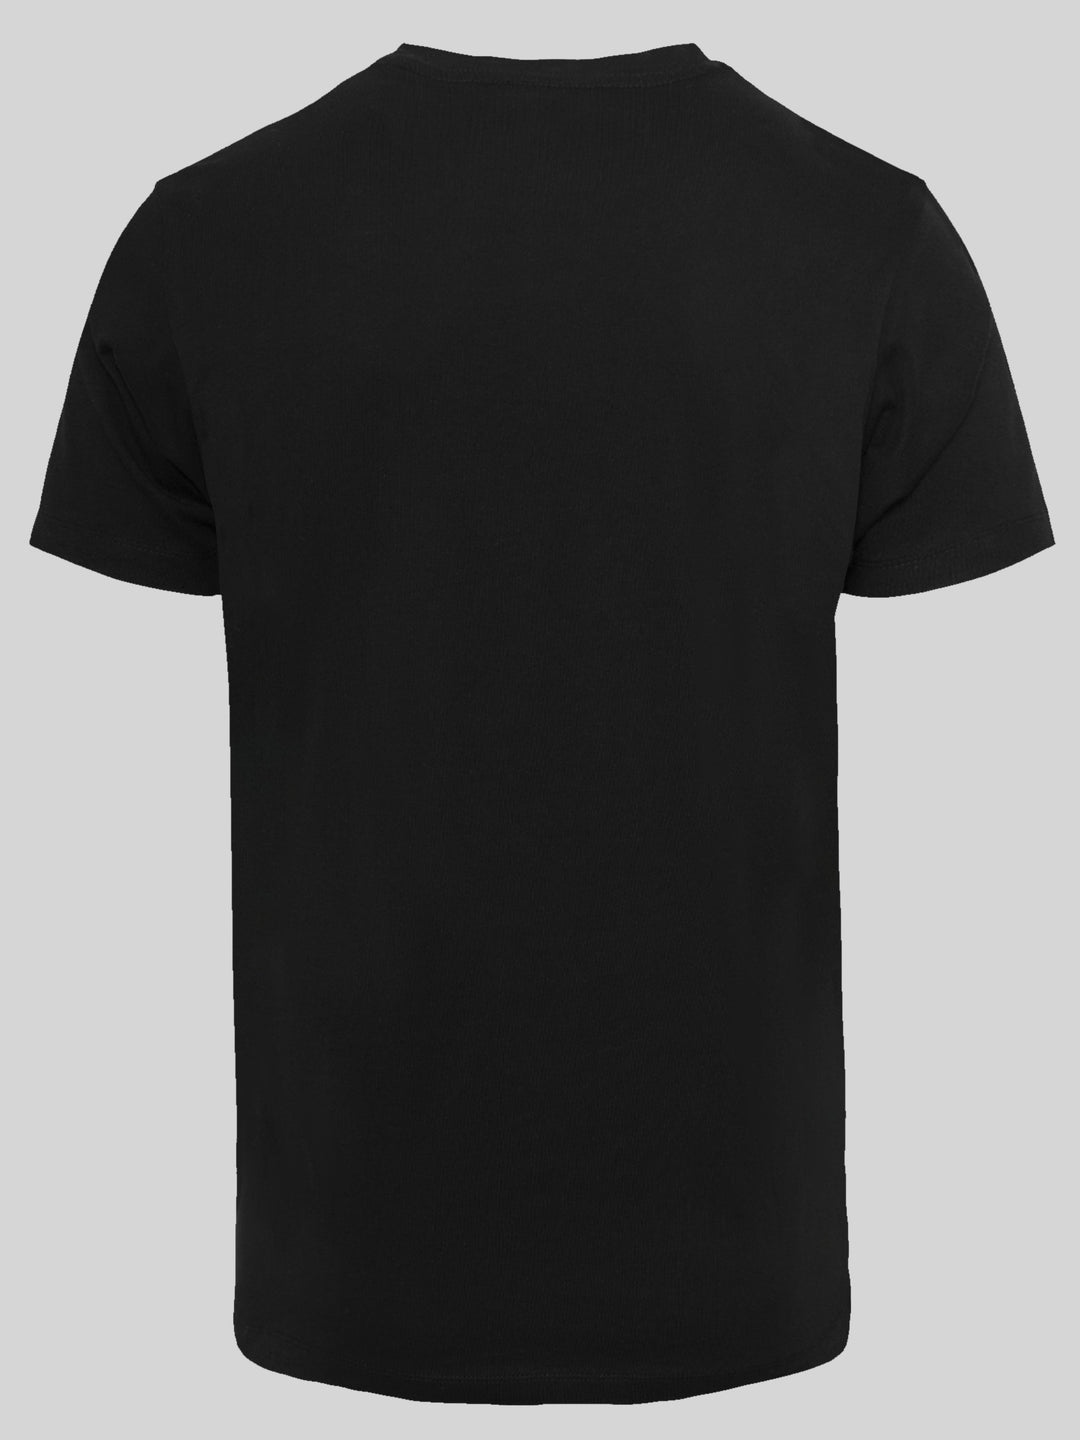 David Bowie T-Shirt | Cross Smoke | Premium Men T Shirt